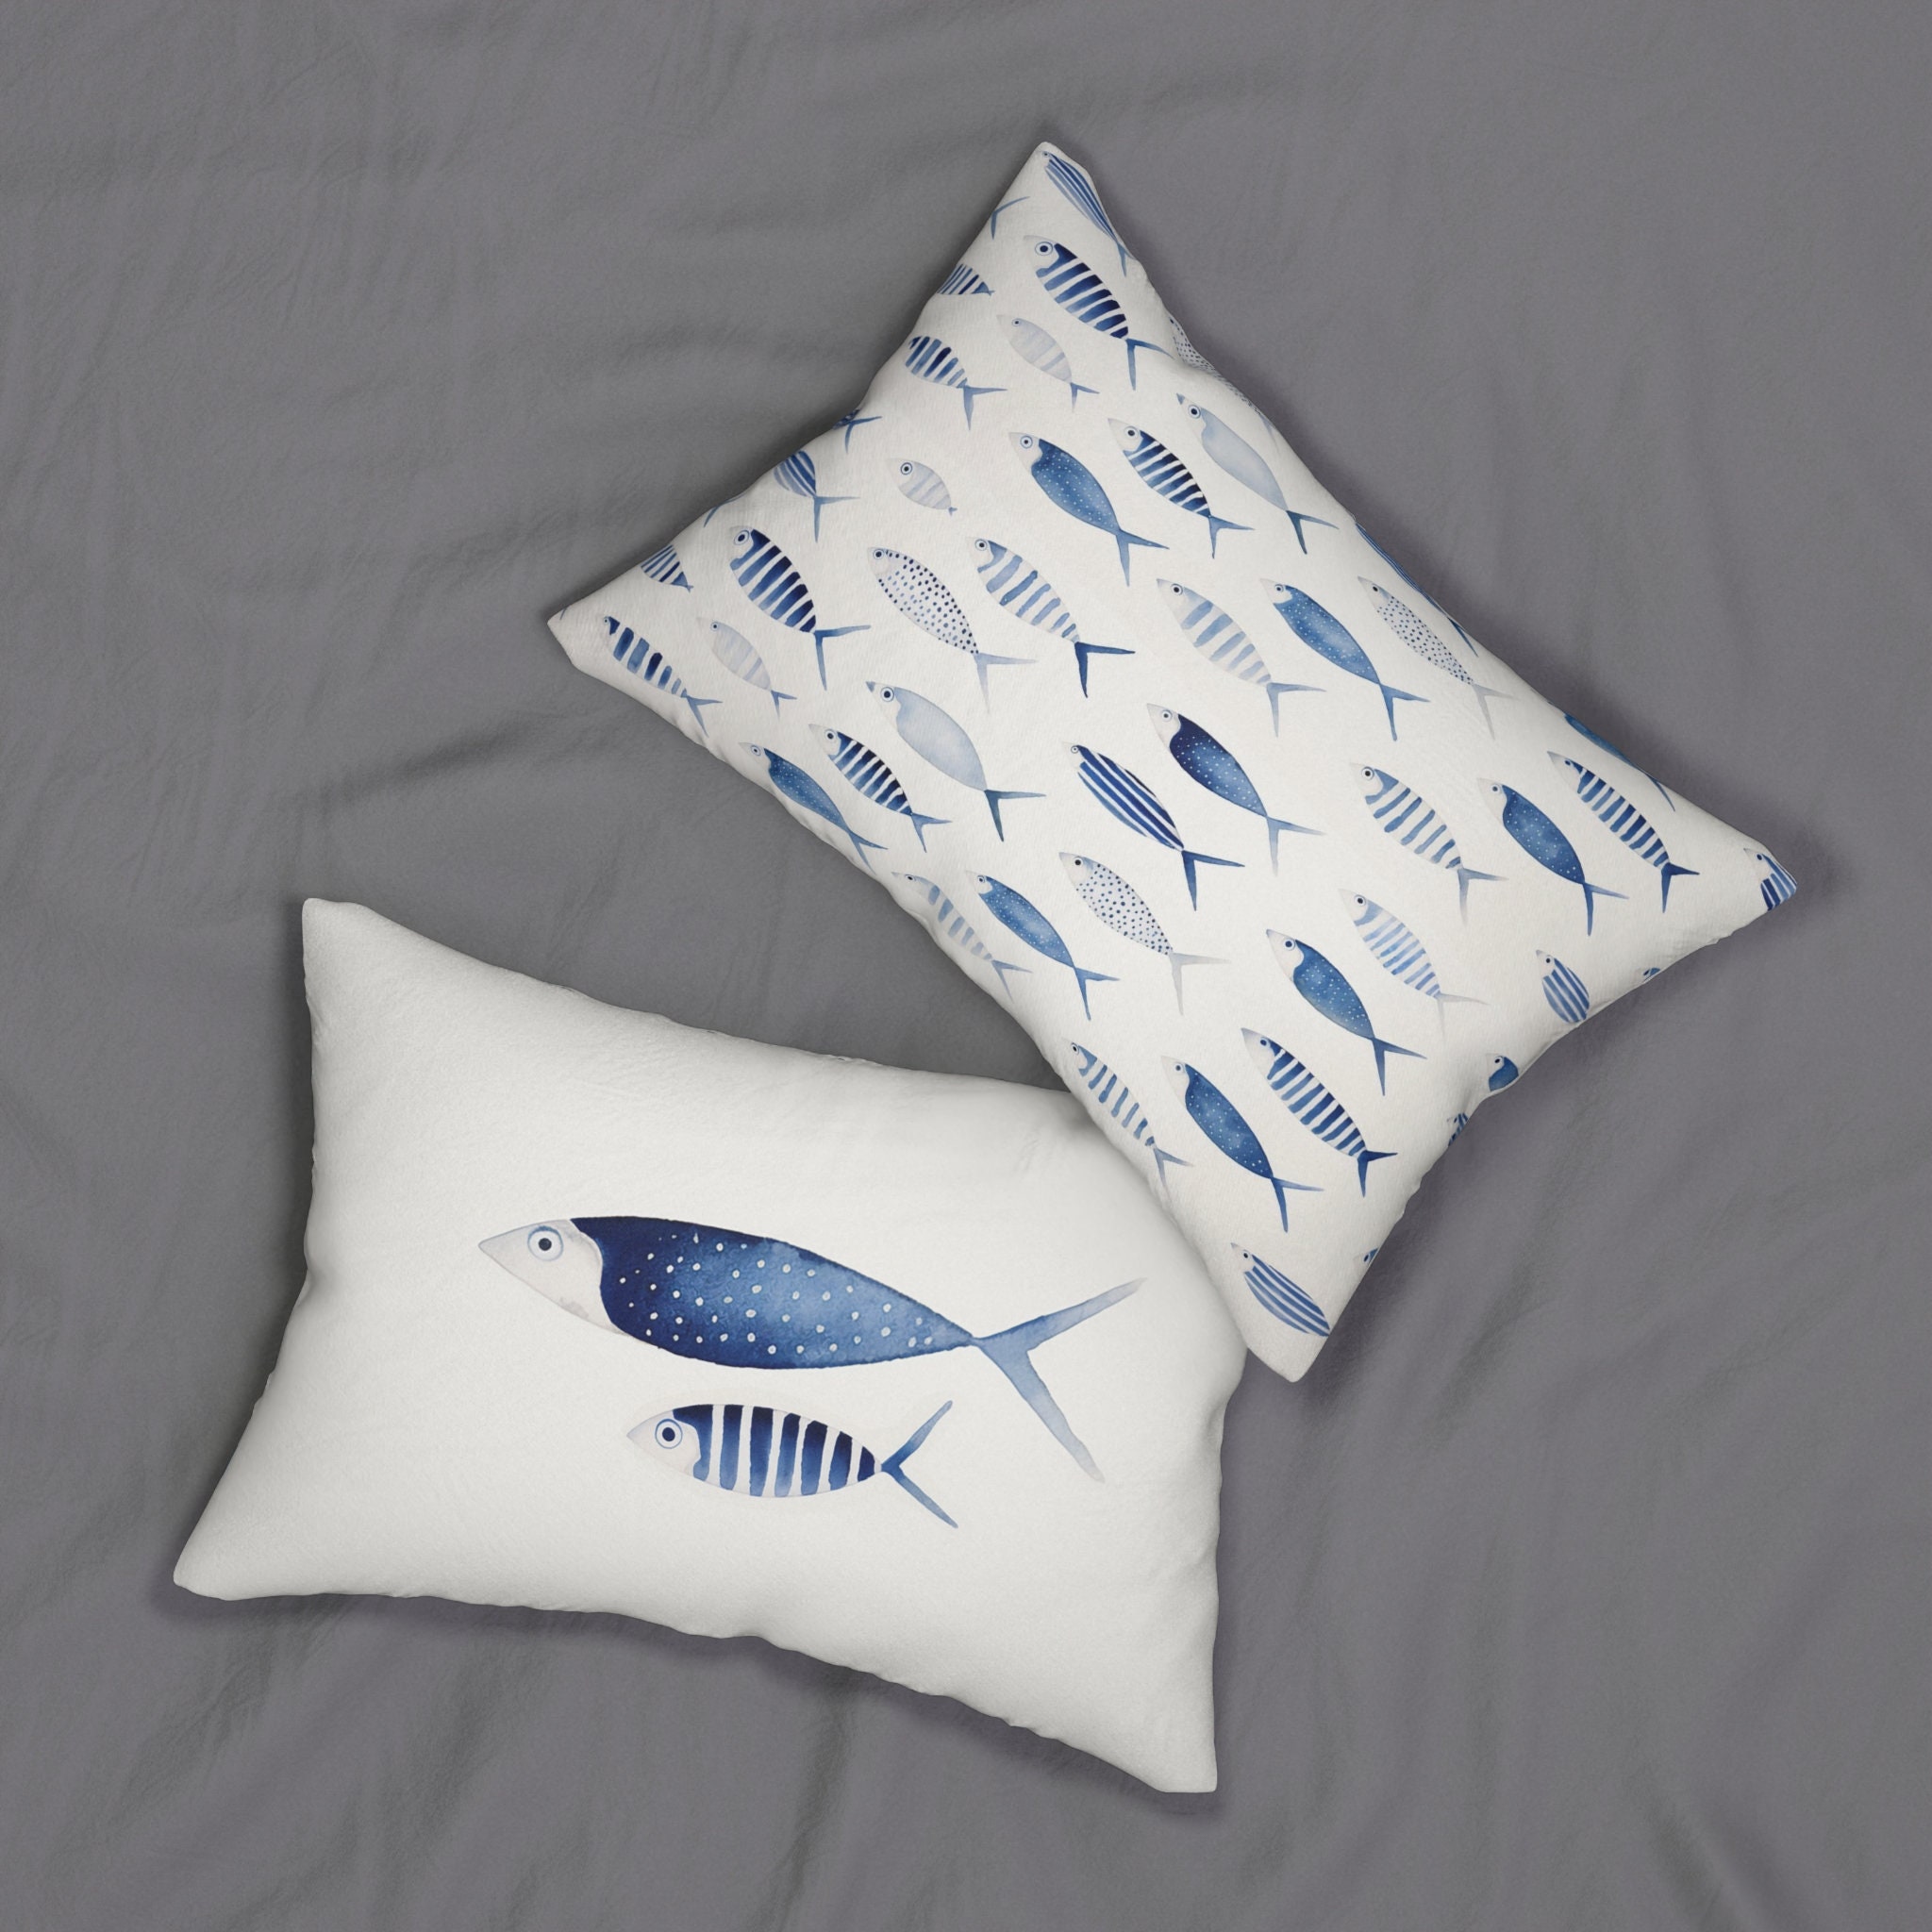 Buy Fish Throw Pillow, Applique Pillow, Beach Pillows, Beach Decor